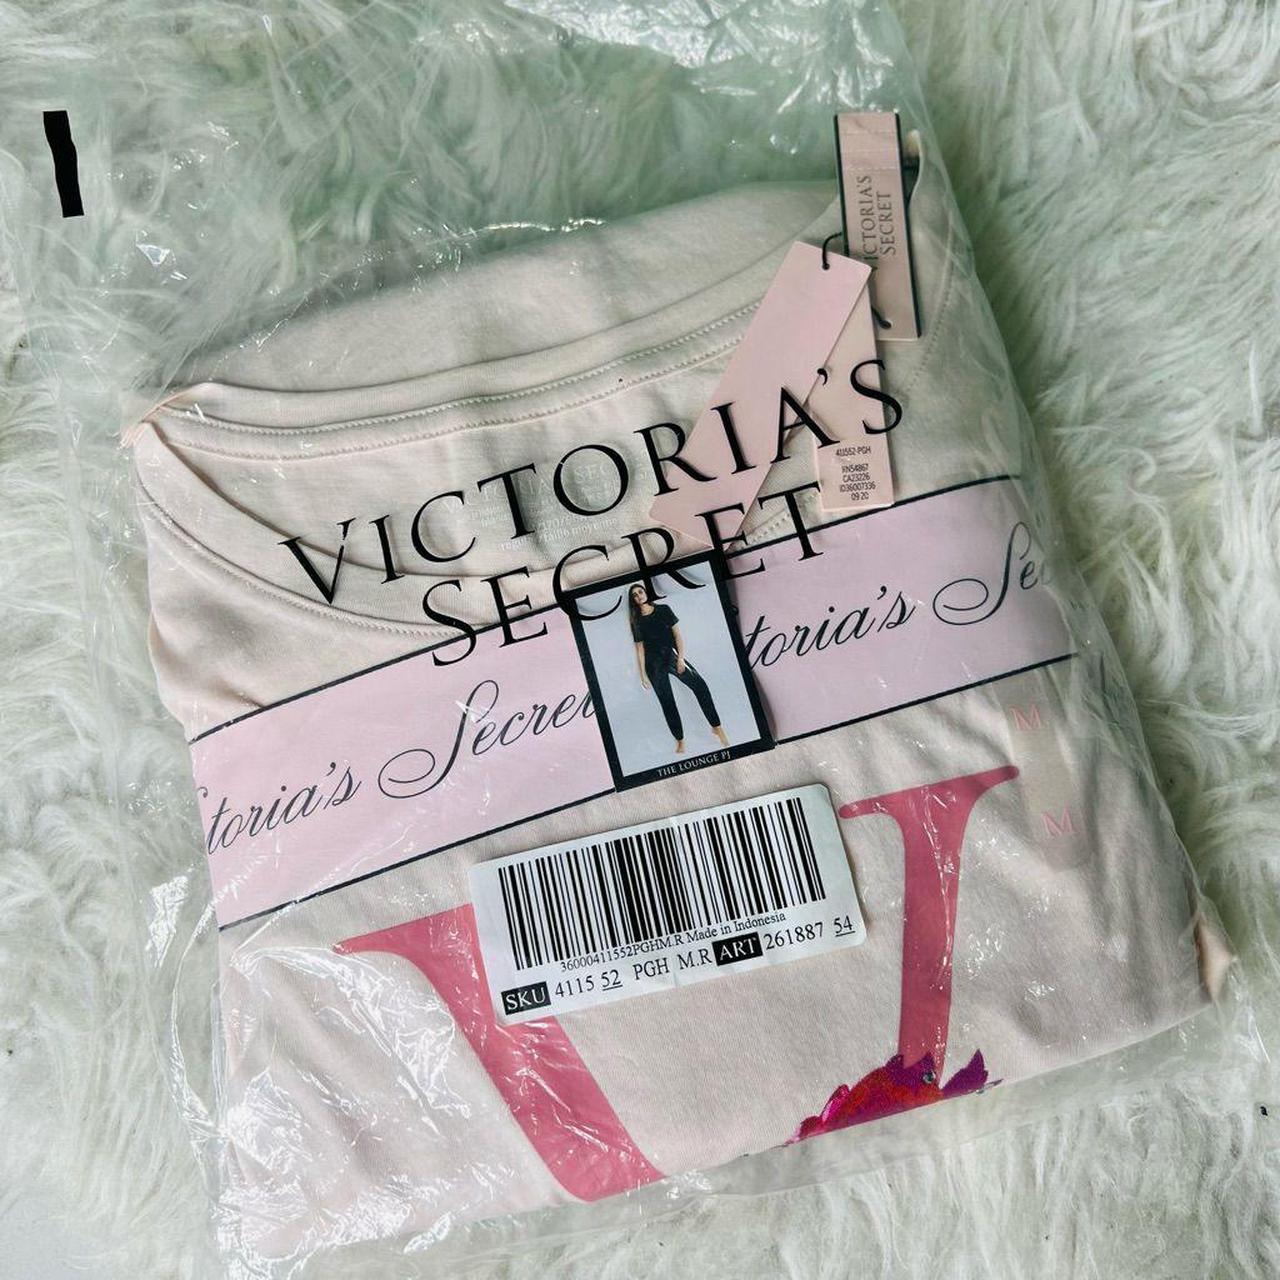 Victoria’s Secret pink the lounge set pjs pink size... - Depop